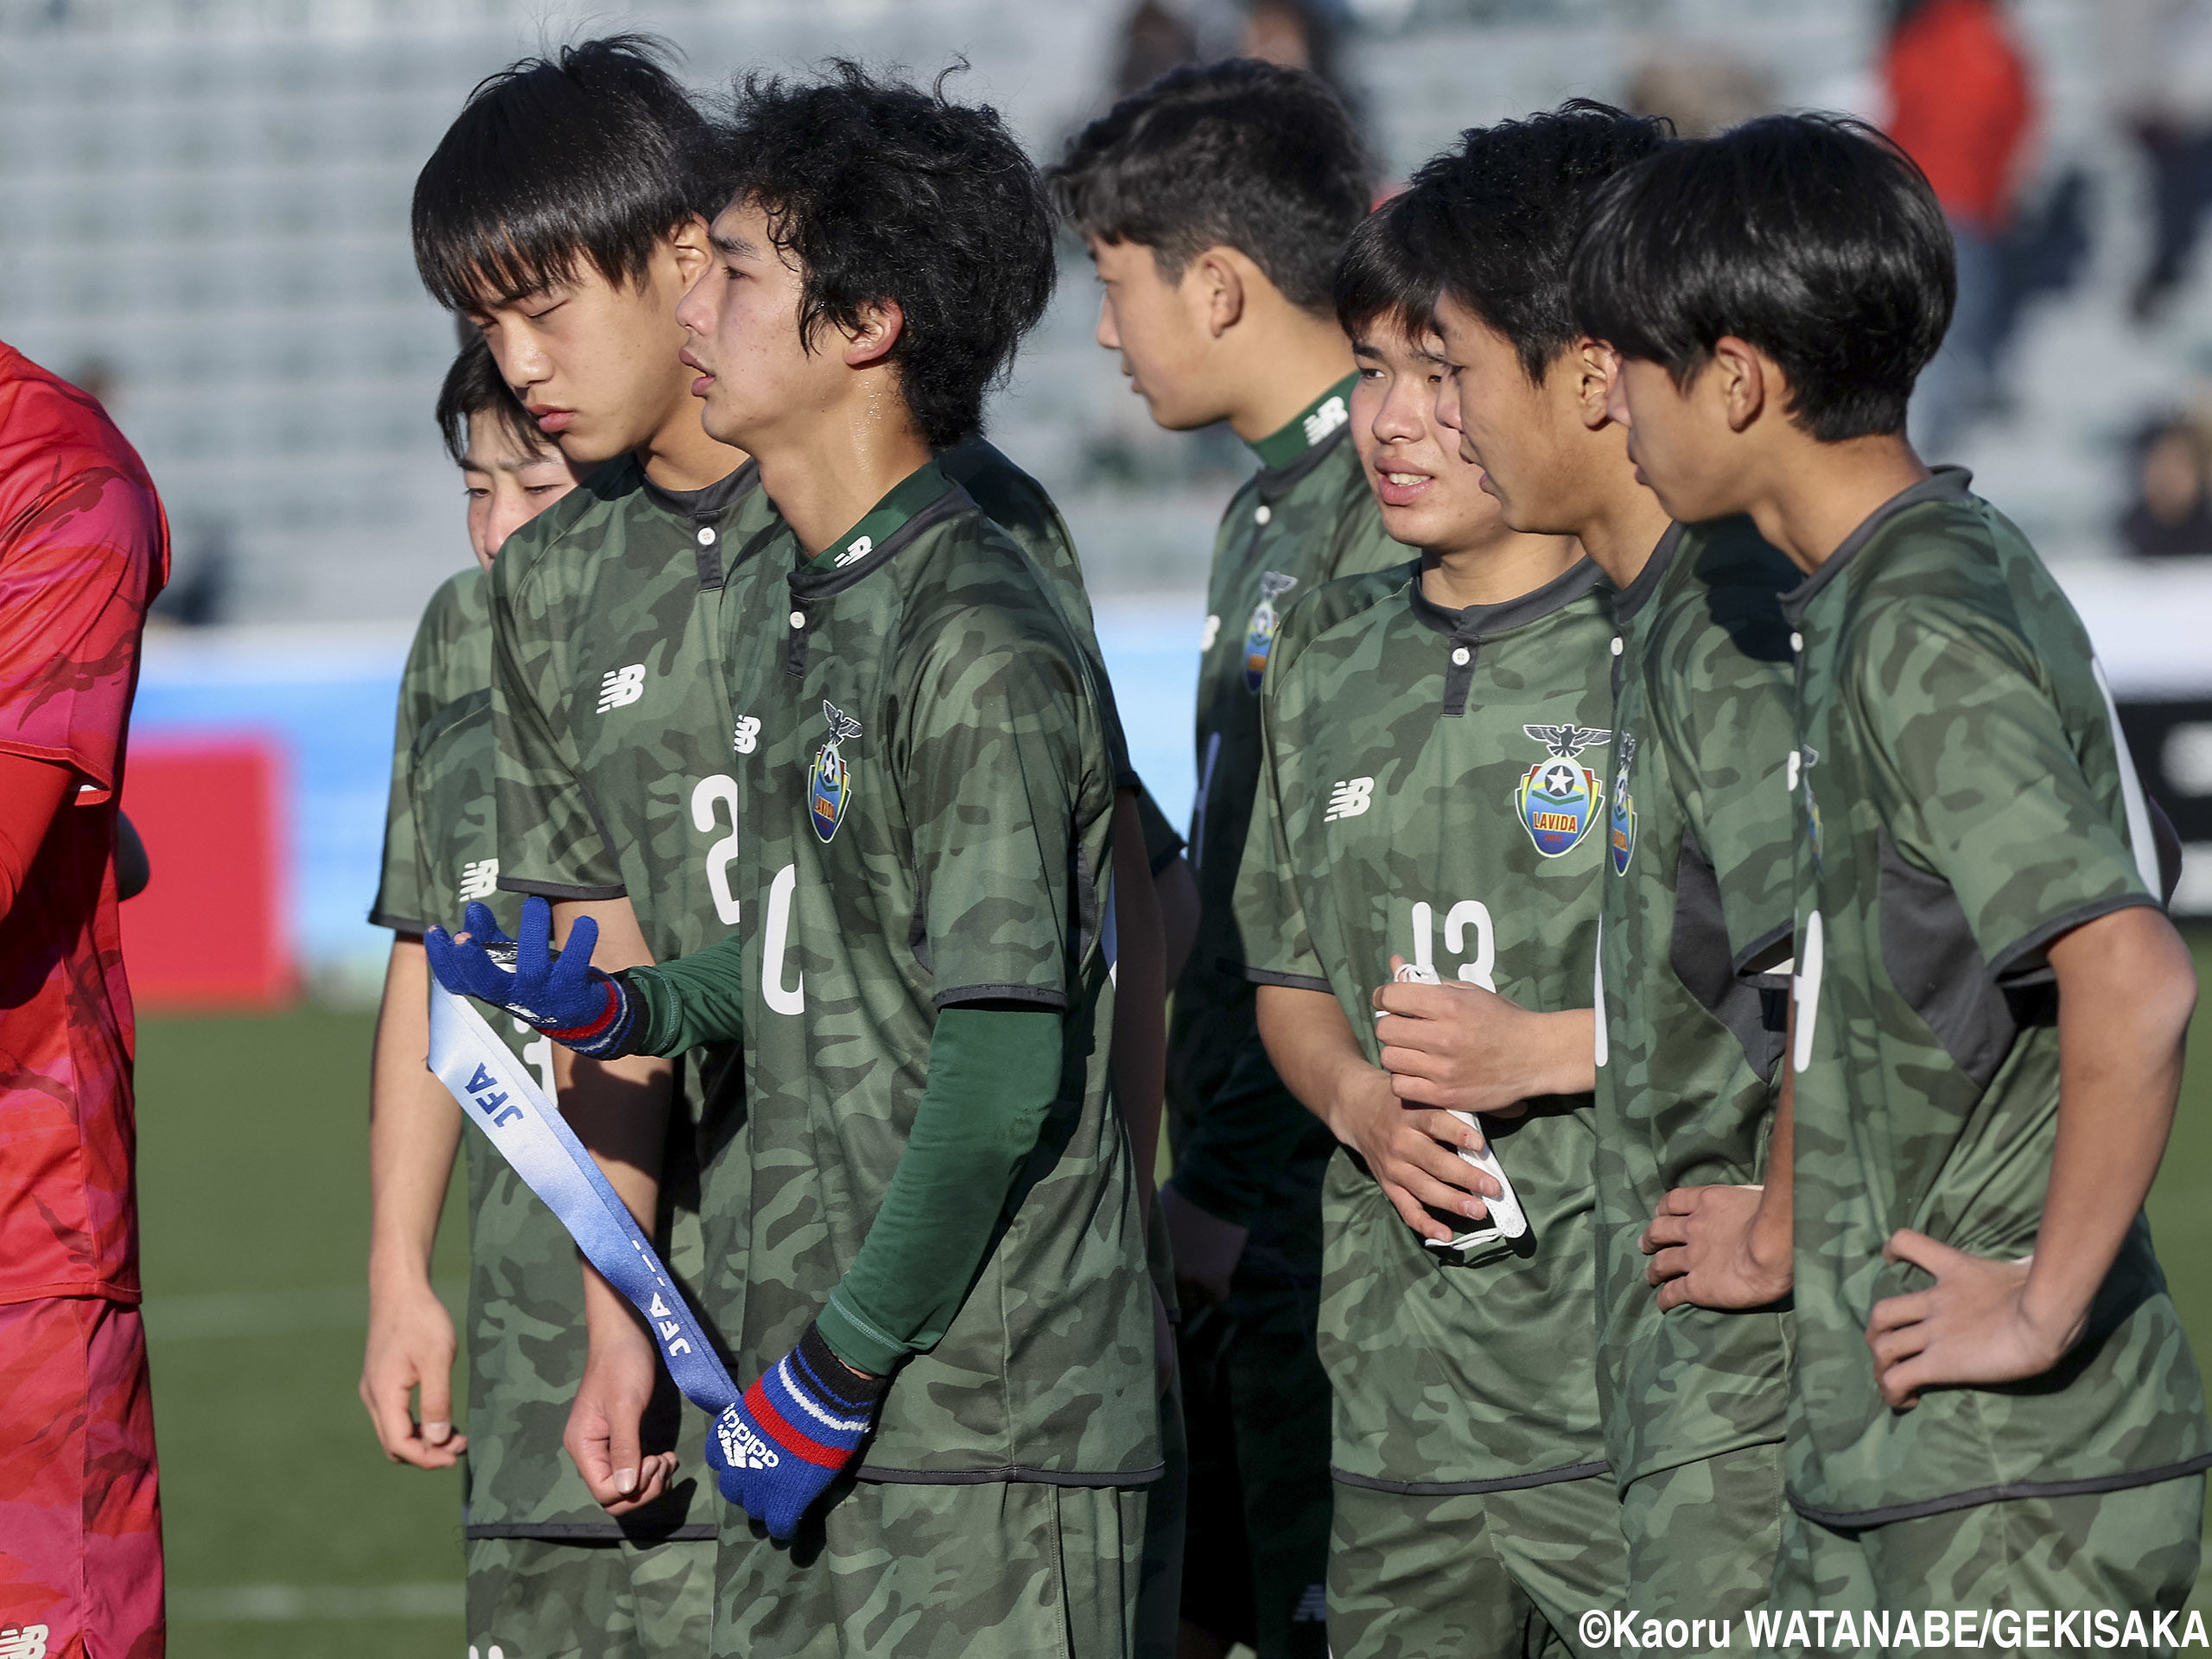 旋風起こした“街クラブ”FC LAVIDA、高円宮杯U-15は初の決勝進出も準優勝